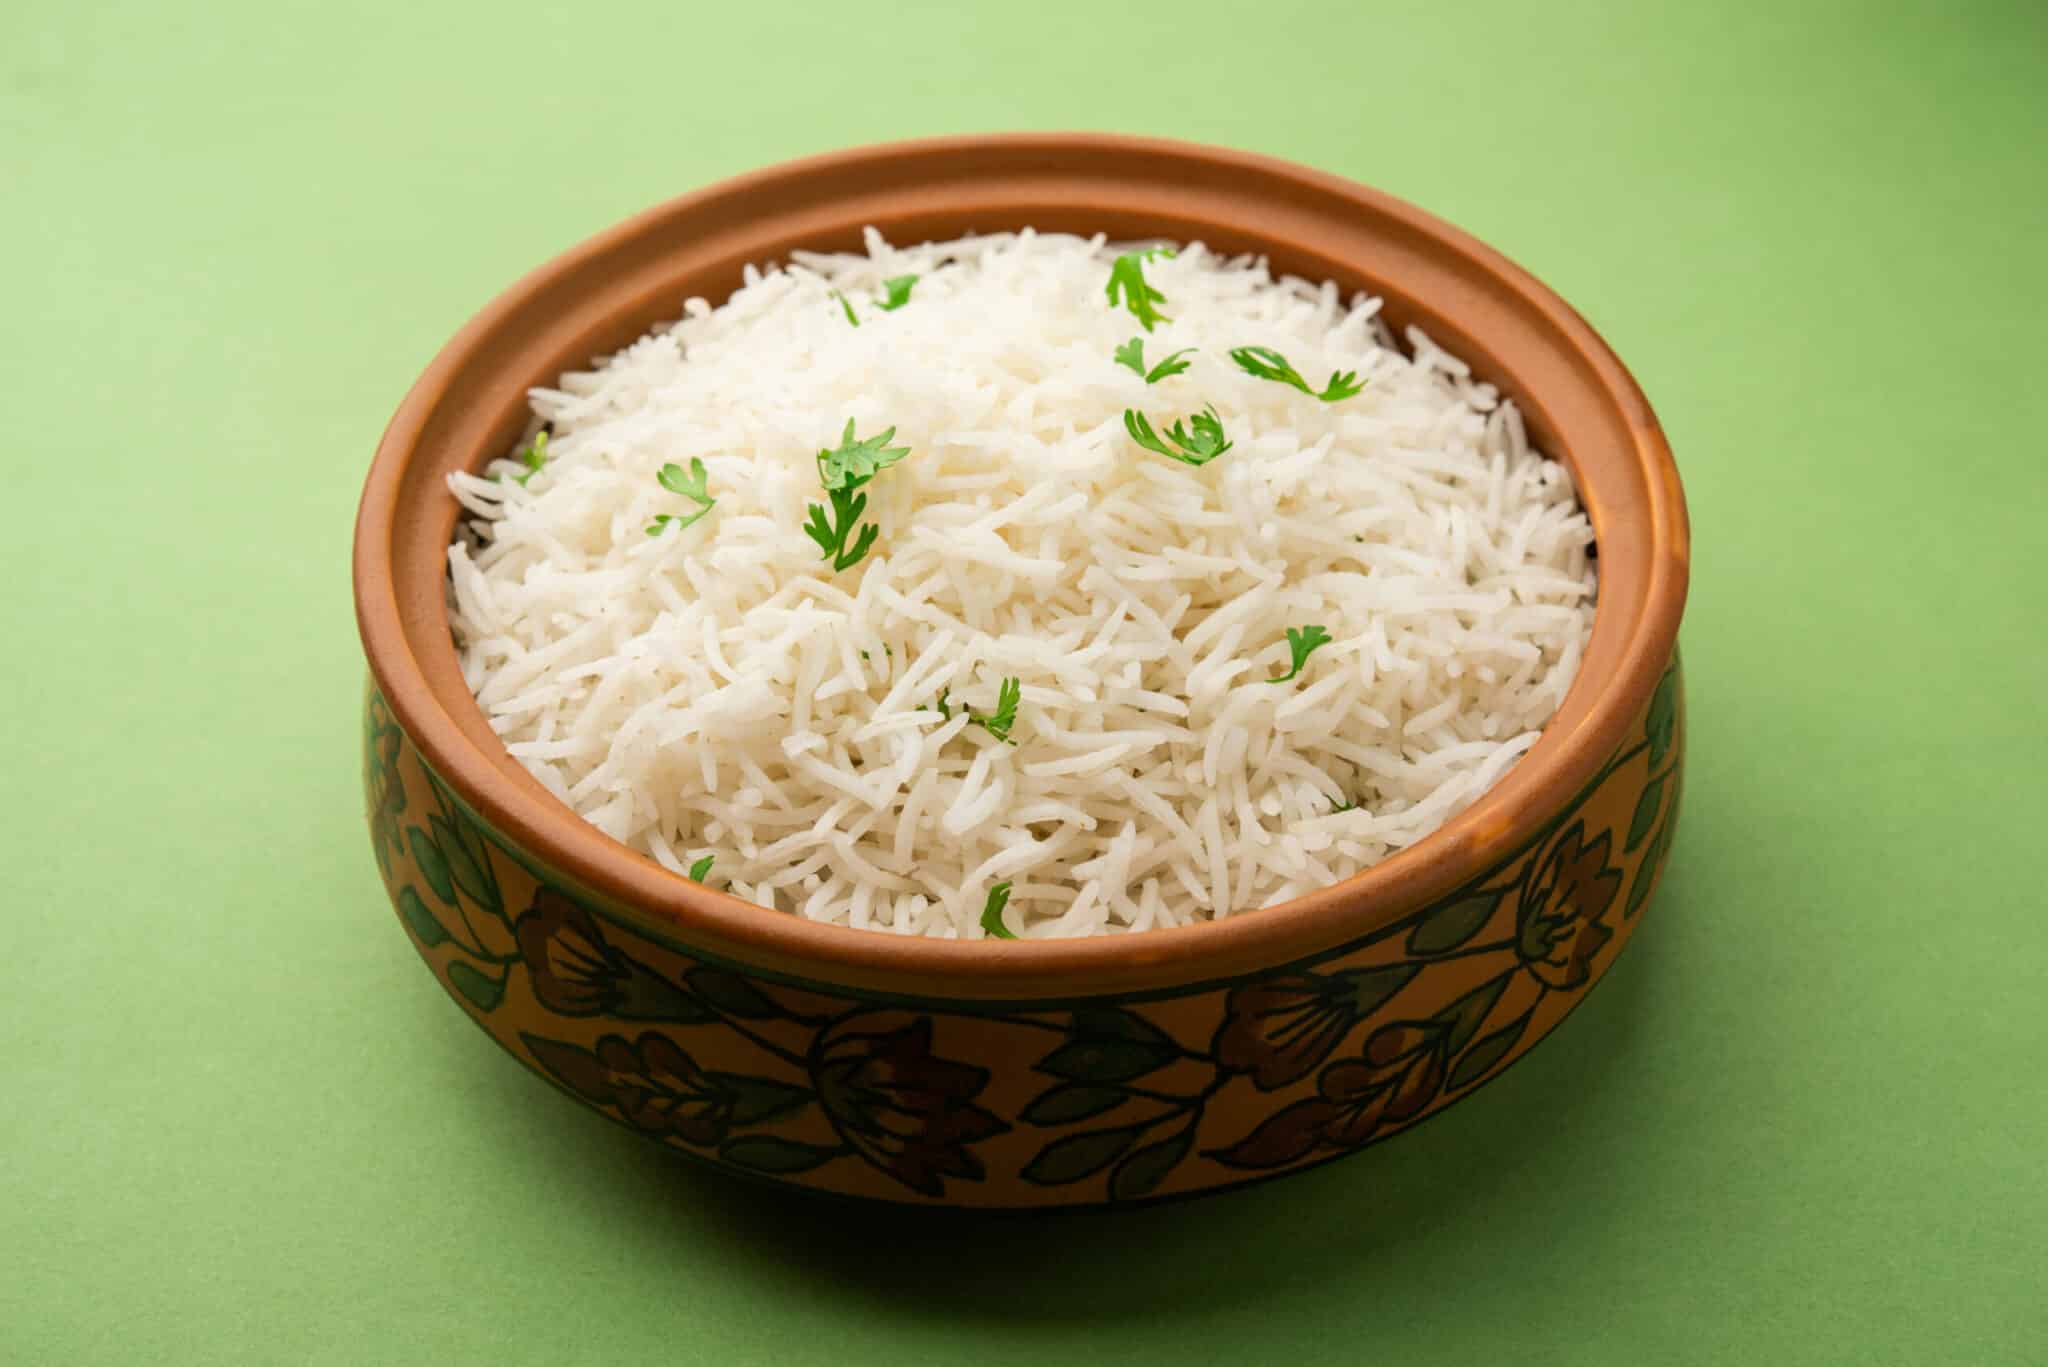 How to Make White Rice Taste Better